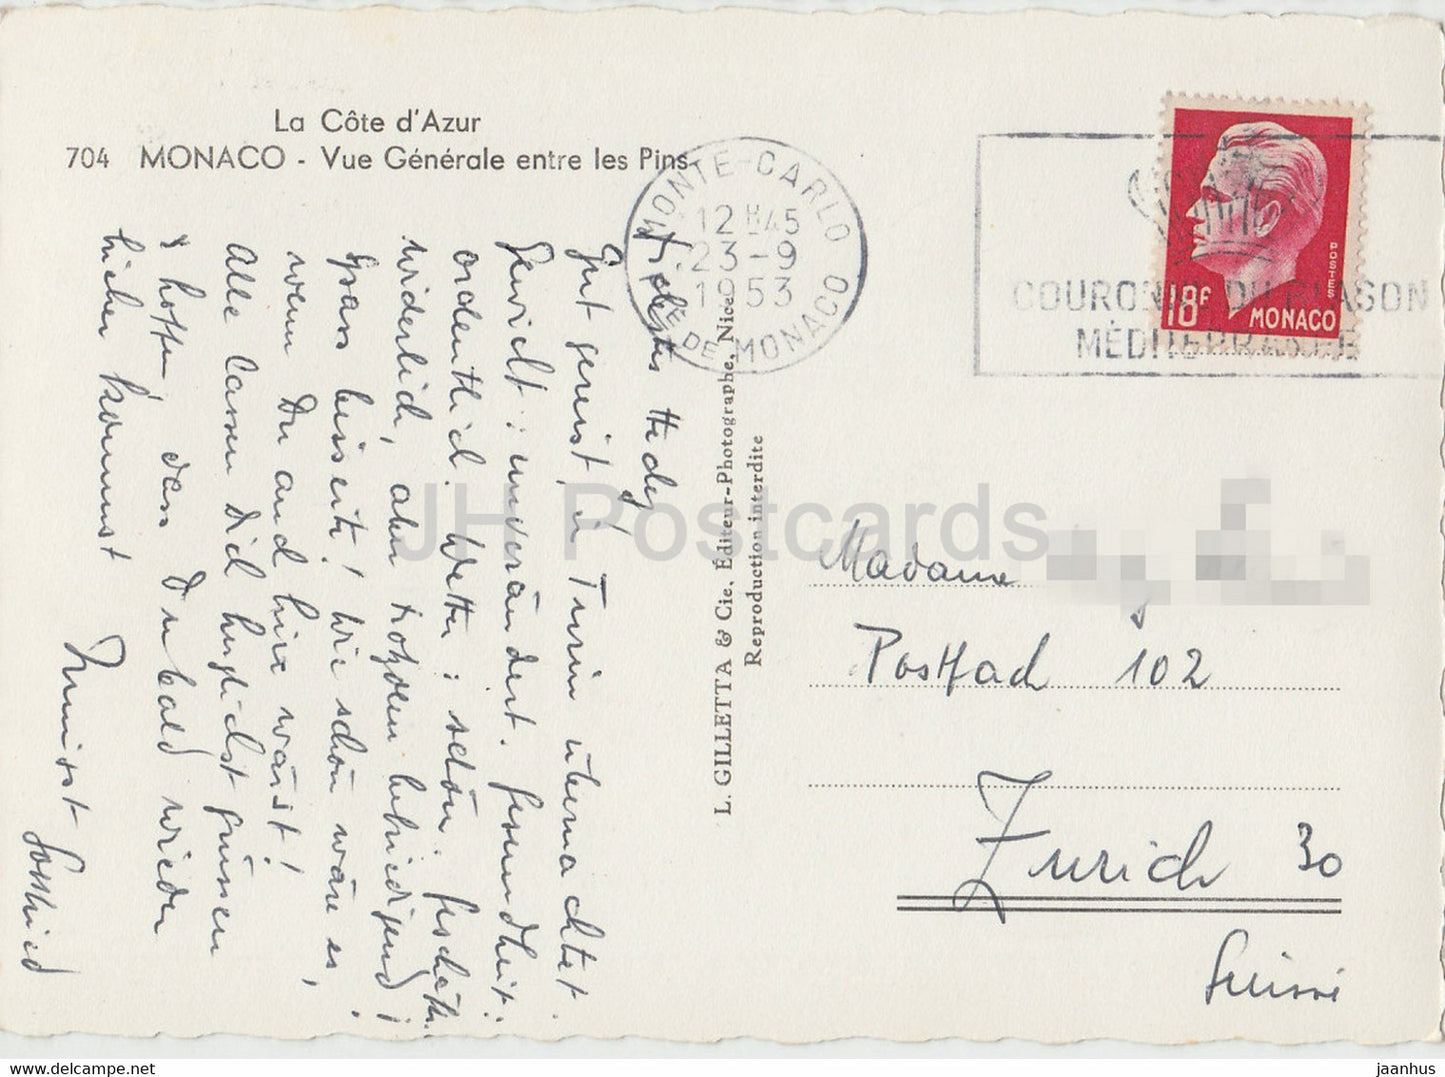 Vue generale entre les Pins – alte Postkarte – 1953 – Monaco – gebraucht